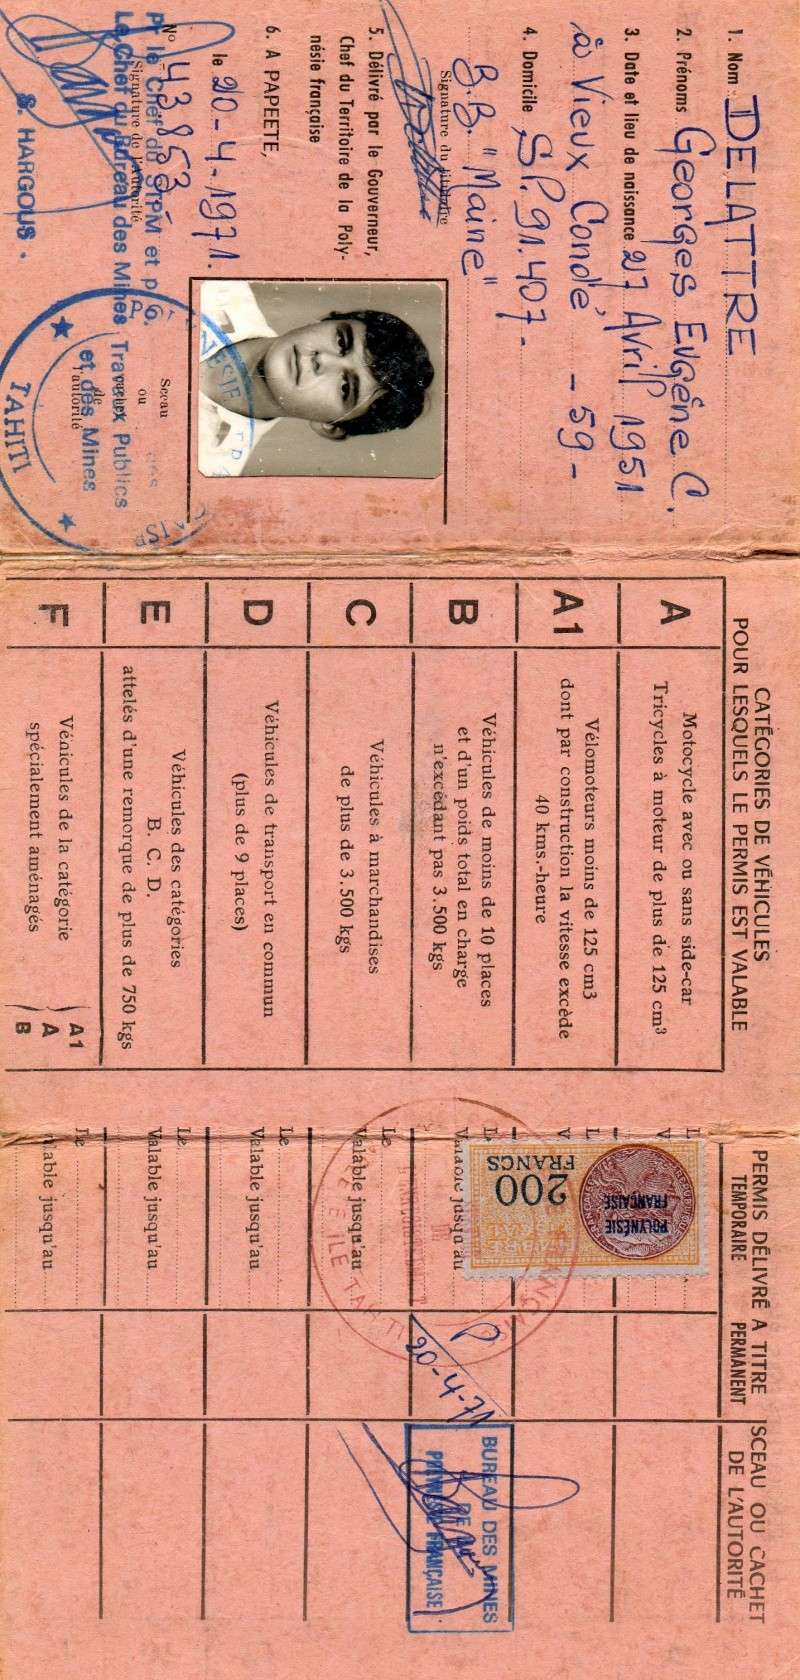 [Papeete] Le permis de conduire à Papeete durant nos campagnes - Page 3 Img28310